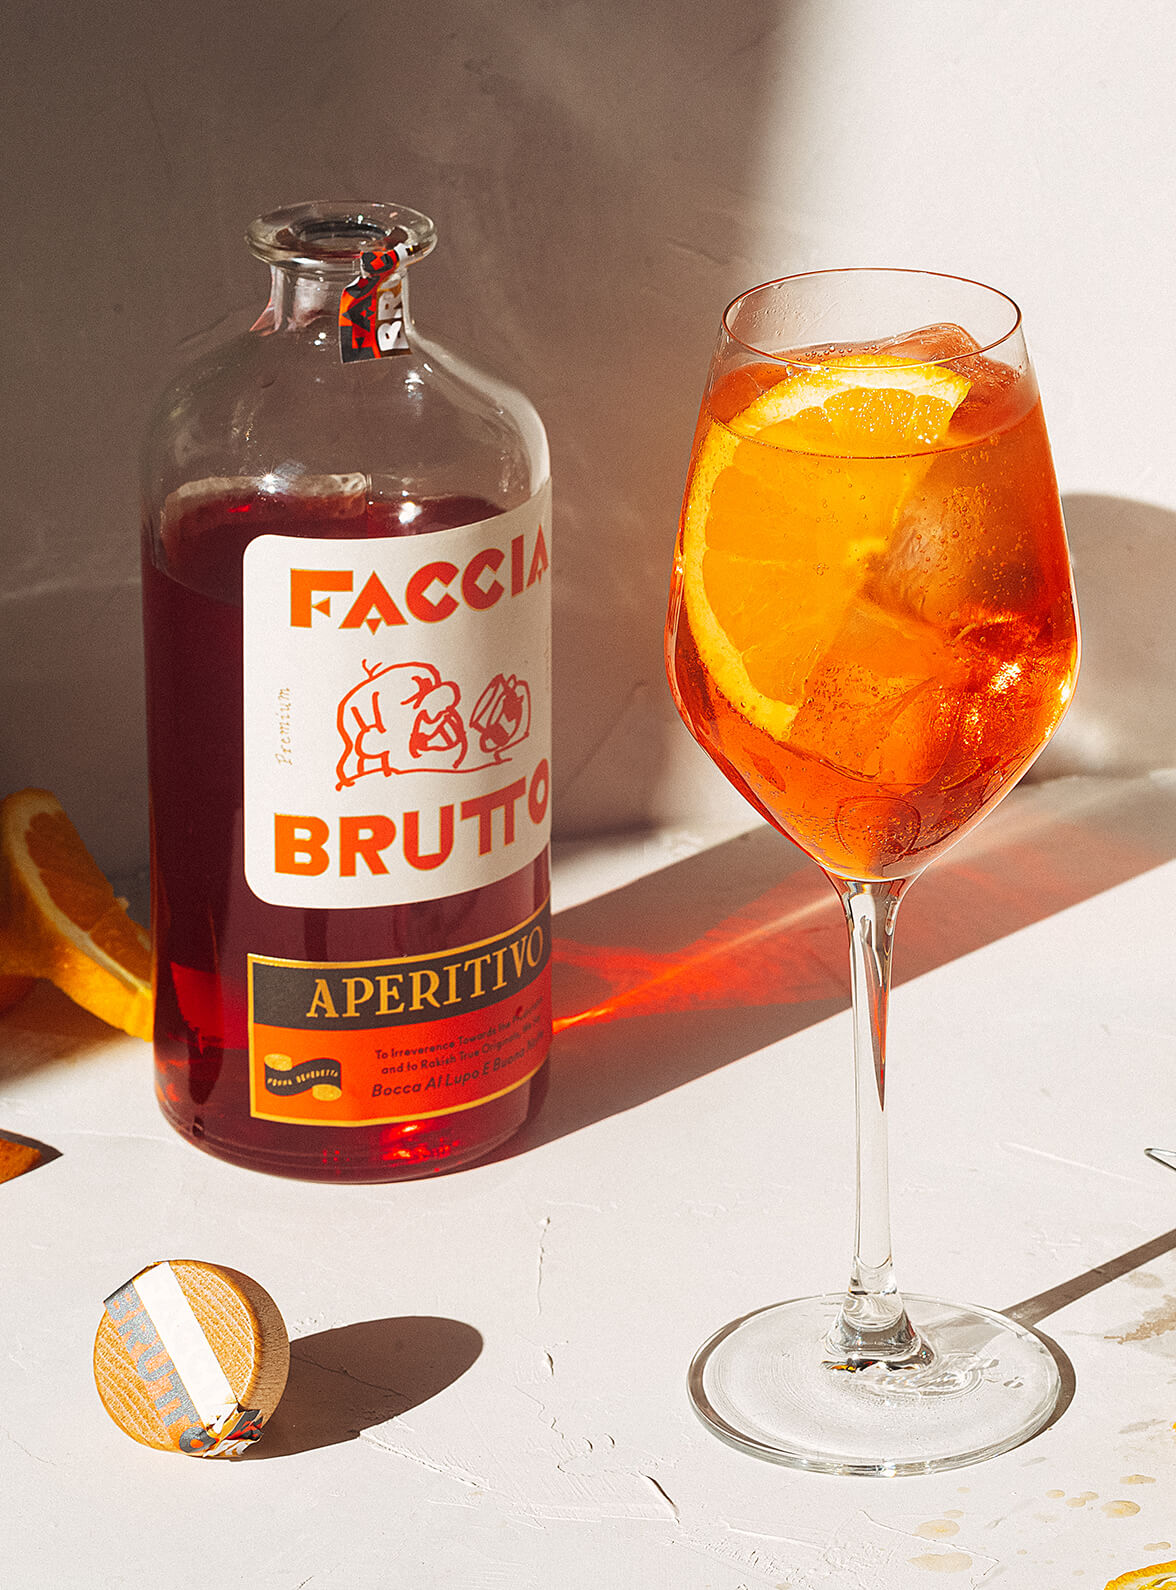 Open bottle of Faccia Brutto Aperitivo with aperitivo spritz in wine glass